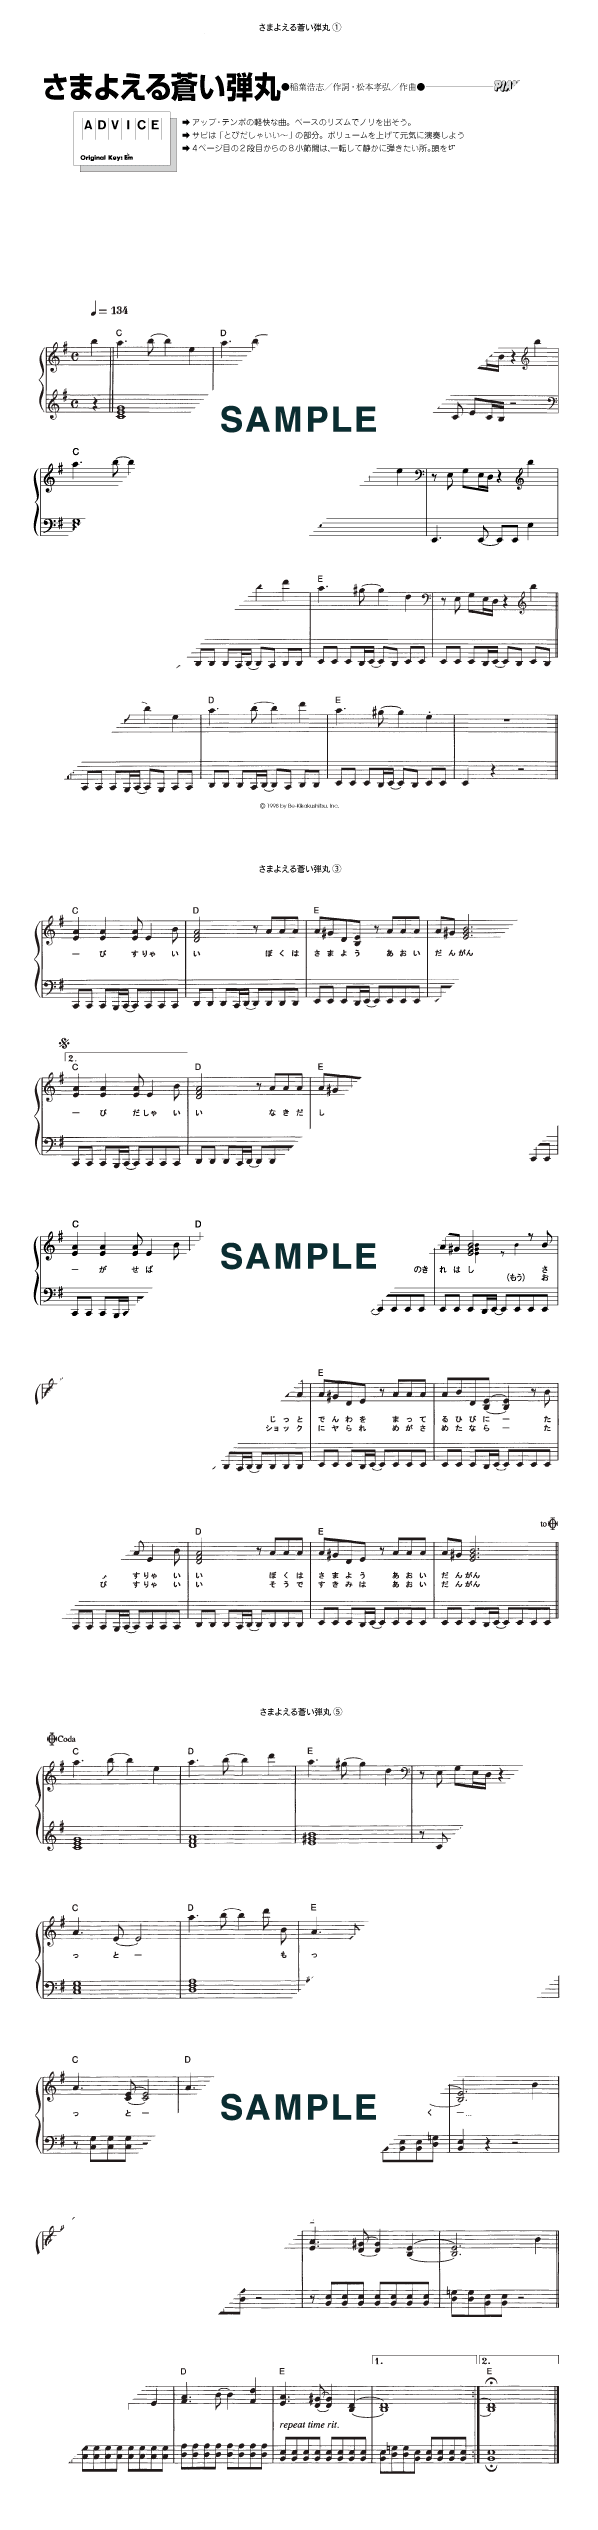 さまよえる蒼い弾丸                                                                                                                            B’z                                                                                                                                                                                                                                     ピアノ・ソロ譜                                                                                                                                                                  /                             初中級                                                                         / 提供:                        KMP